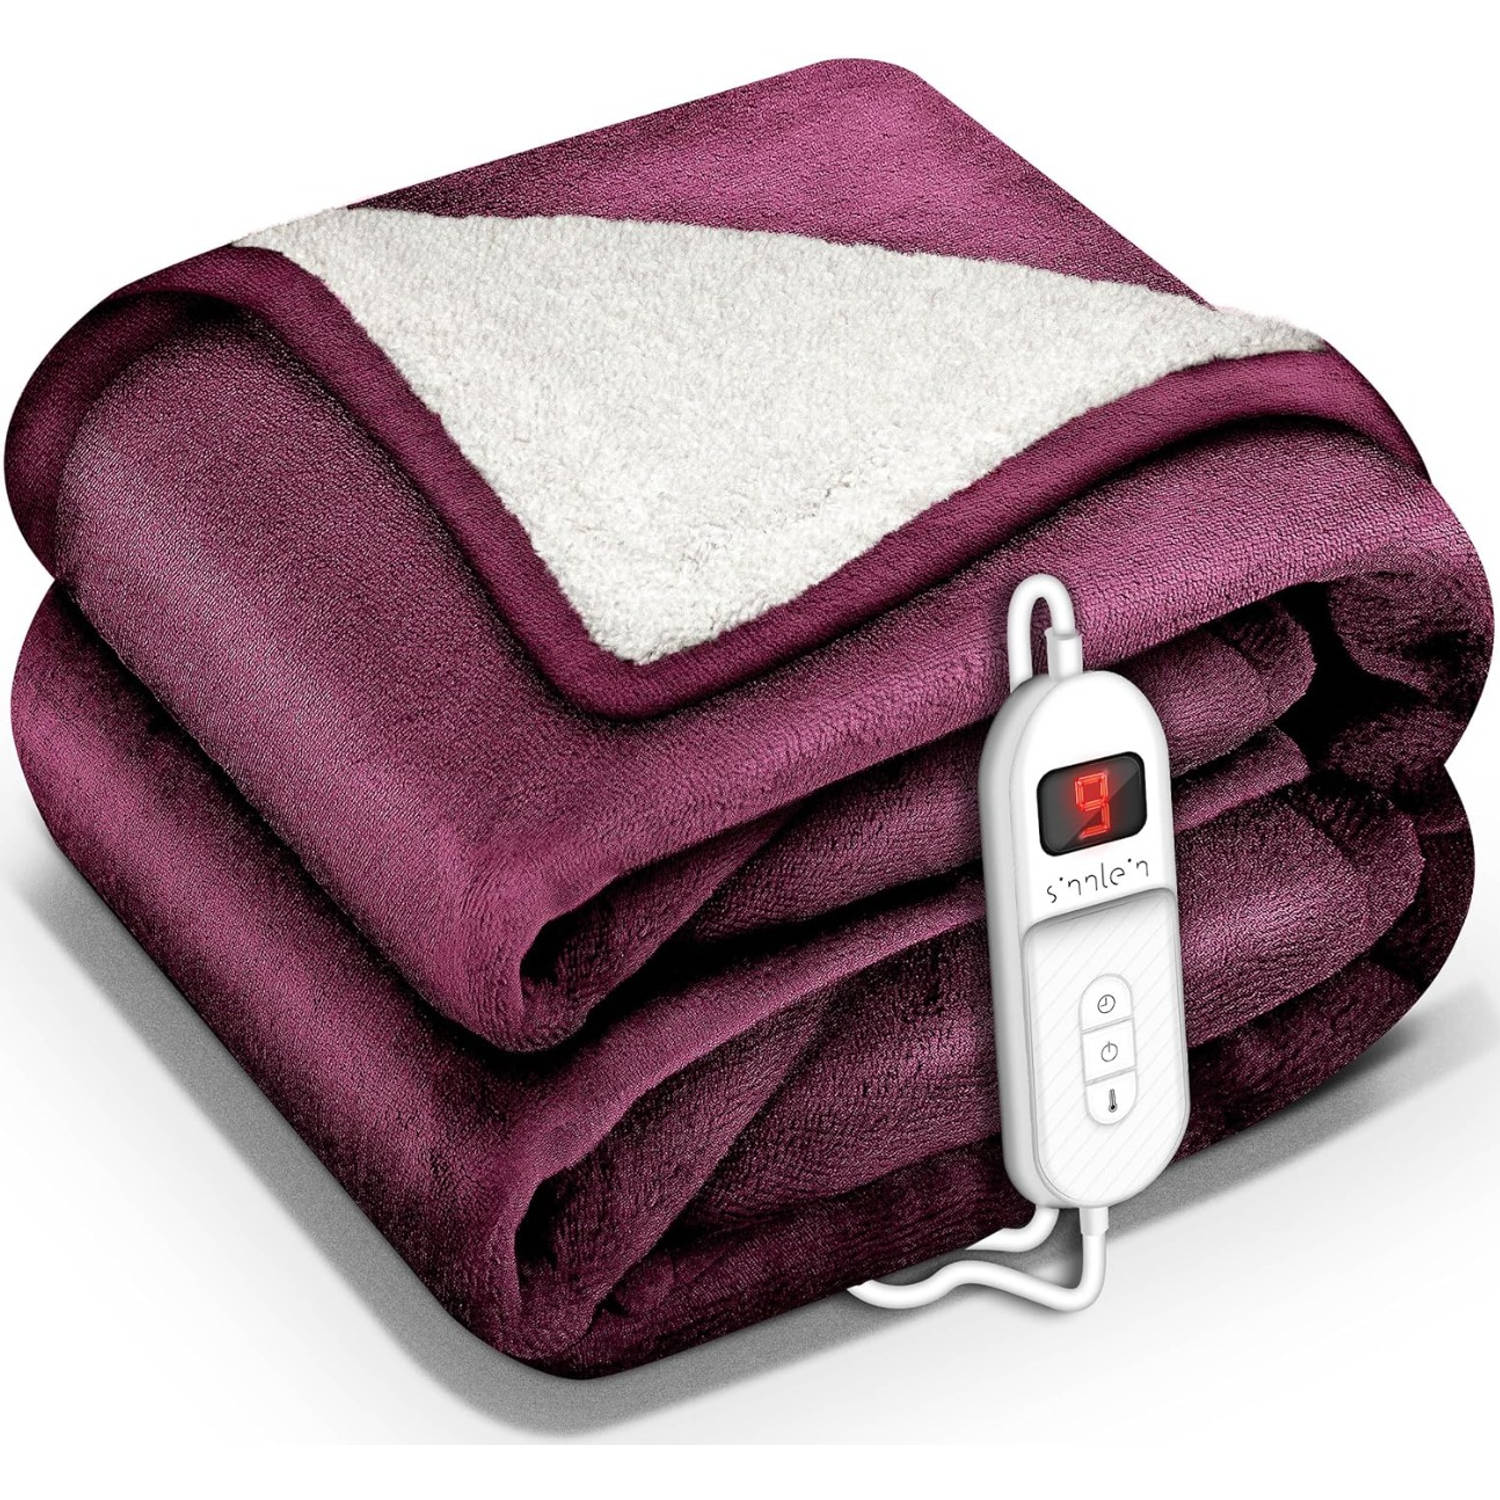 Sinnlein- Elektrische deken met automatische uitschakeling, rood, 200 x 180 cm, warmtedeken met 9 temperatuurniveaus, knuffeldeken, wasbaar